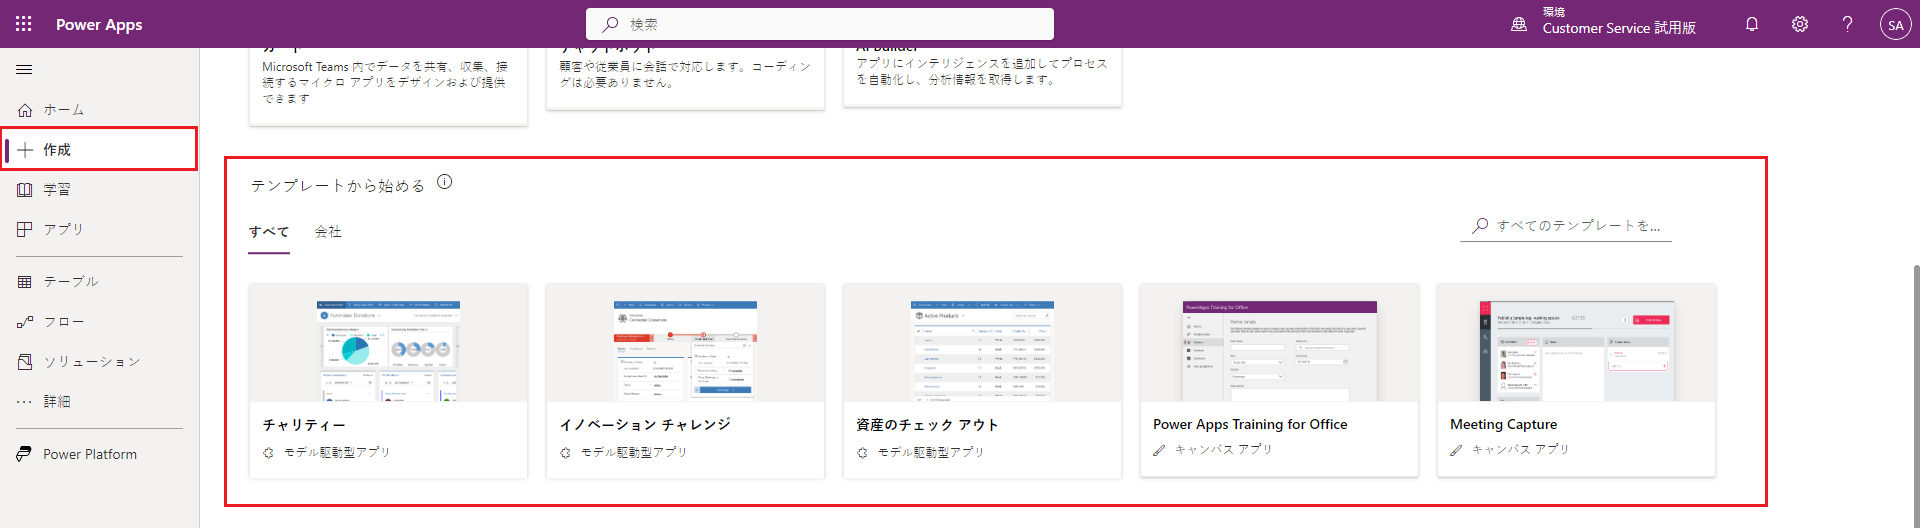 Power Apps サイト。